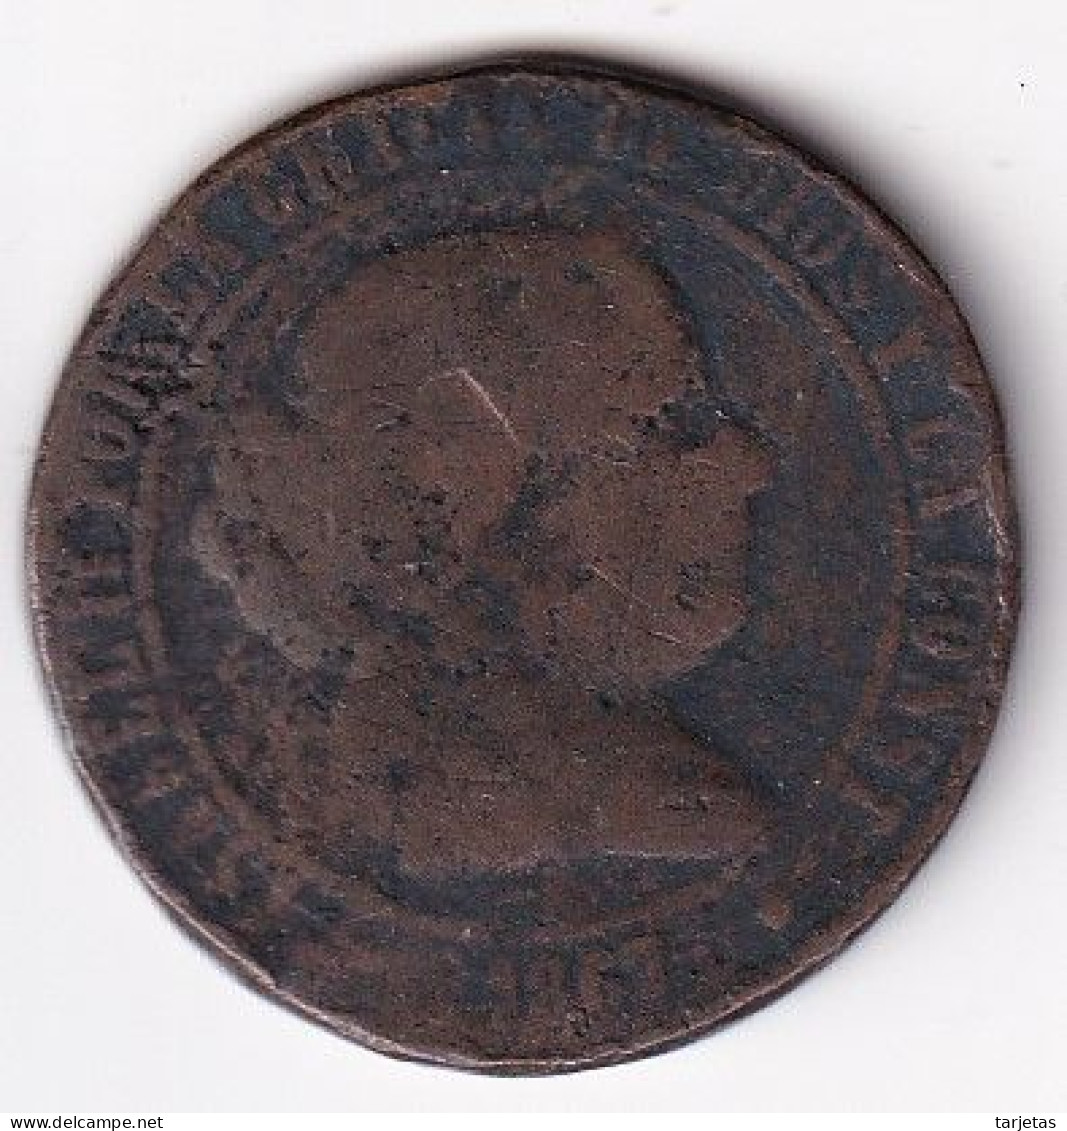 MONEDA DE ESPAÑA DE 5 CENTIMOS DE ESCUDO DE ISABEL II DEL AÑO 1867  (COIN) - Monnaies Provinciales